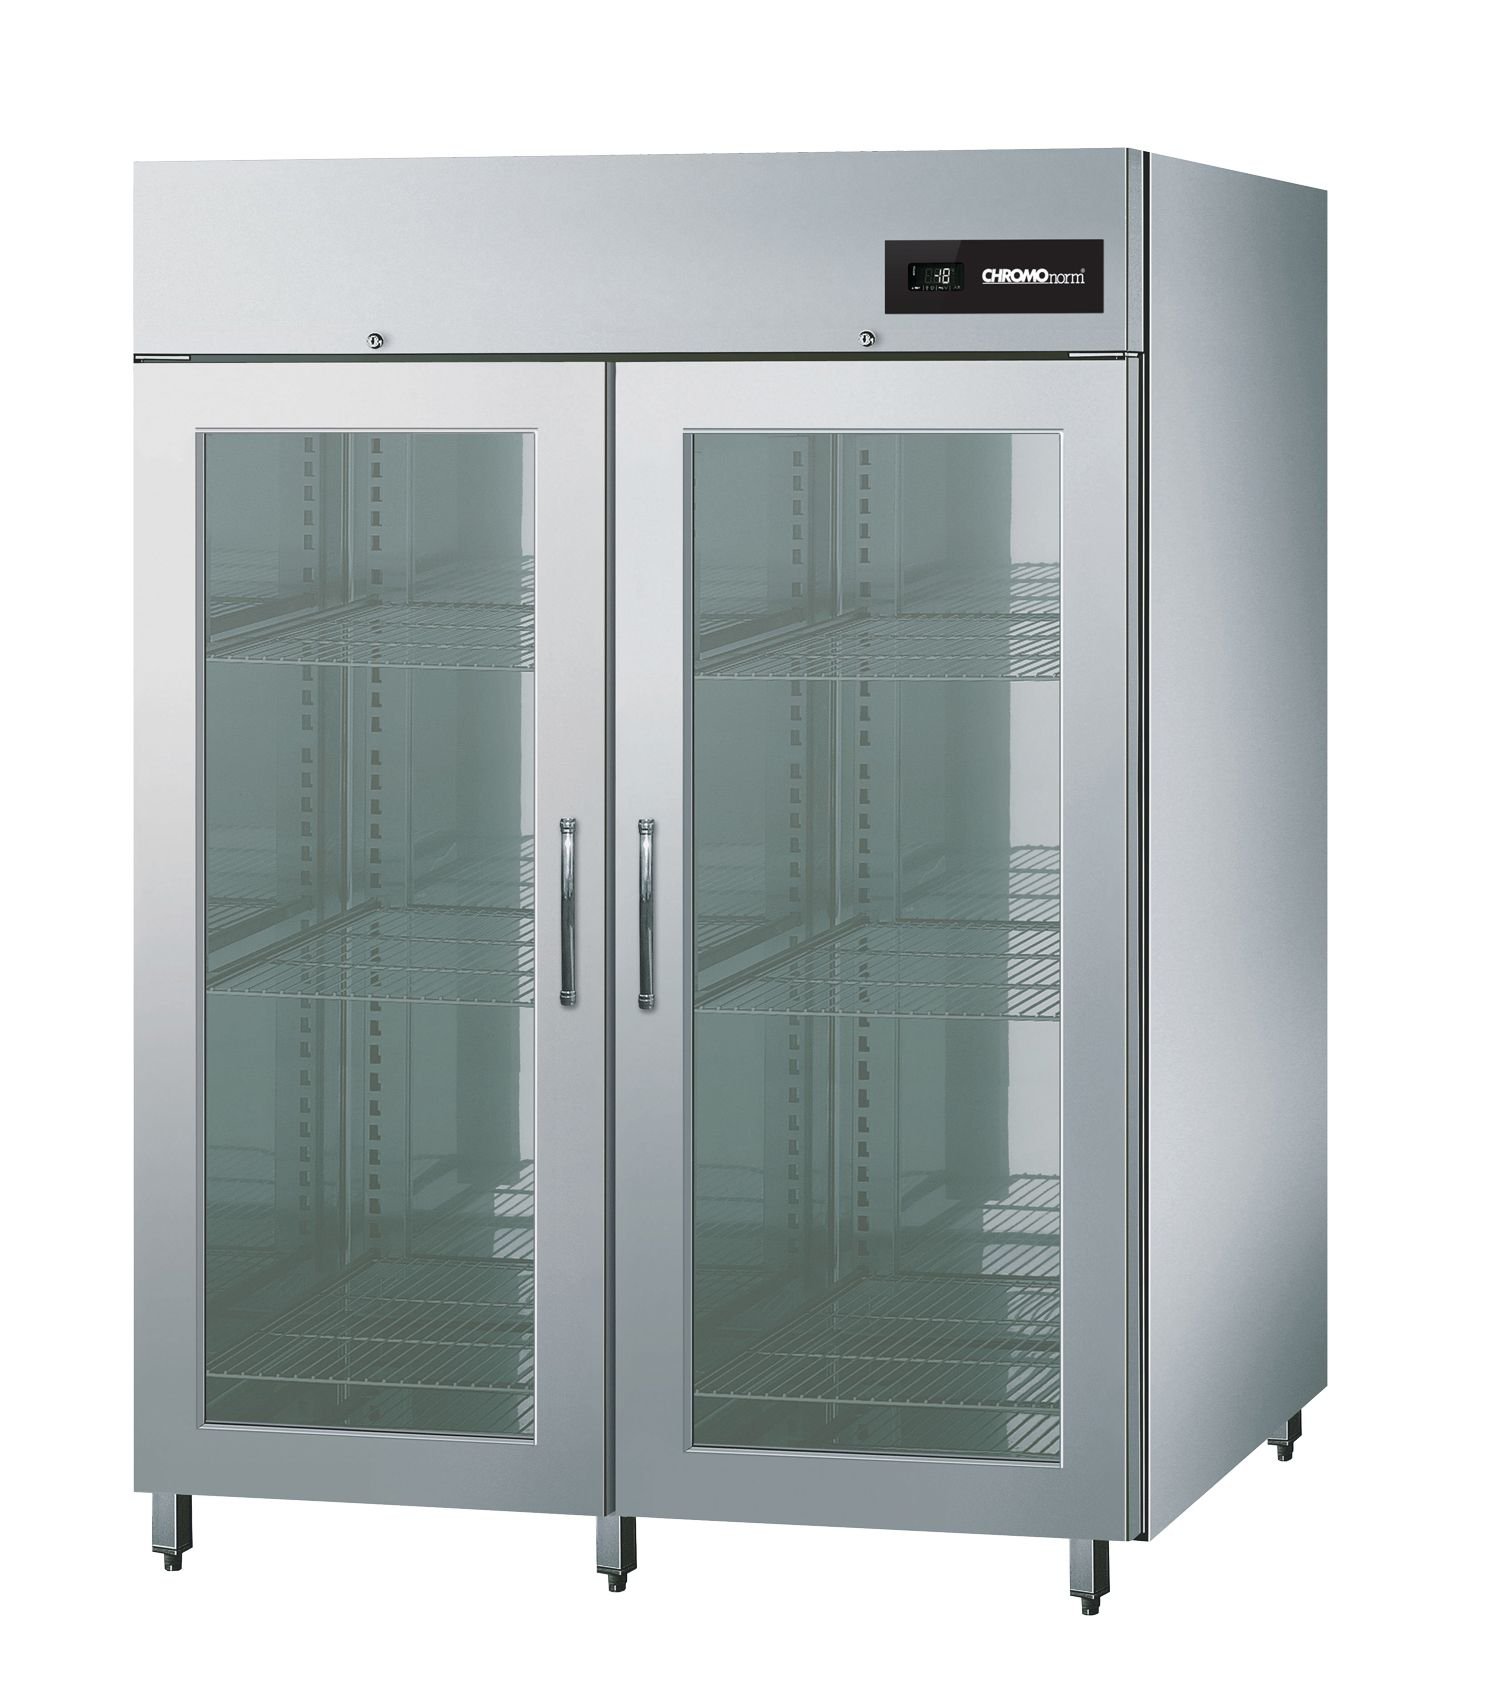 NOVA - Tiefkühlschrank BR 1300 GN 2/1 Glastüren, Zentralkühlung